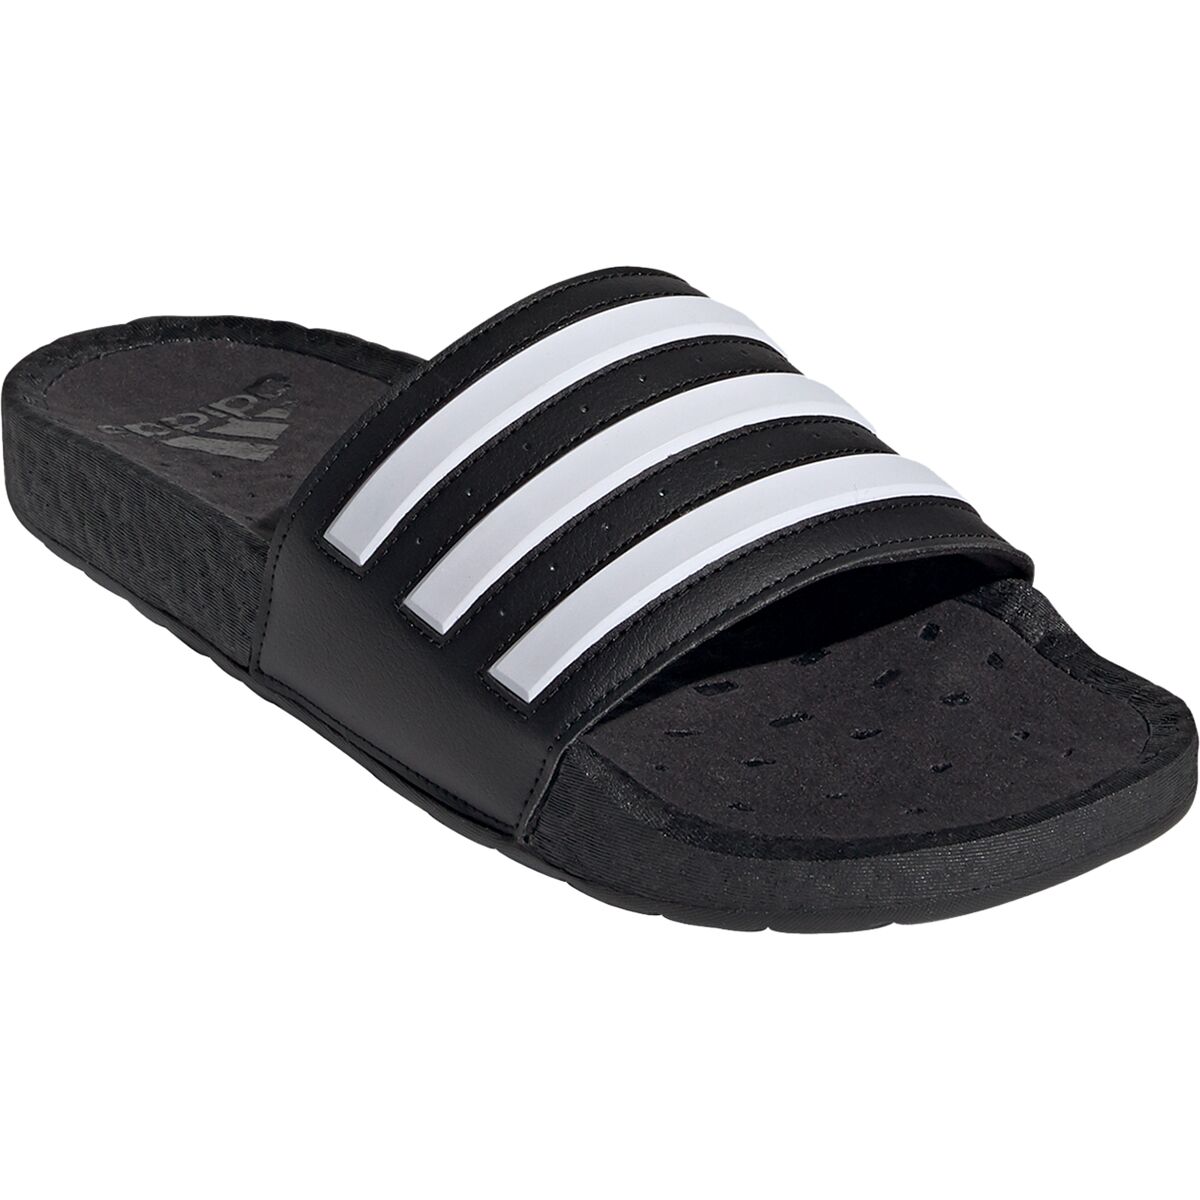 Adidas Adilette Boost Sandal - Men's - Footwear